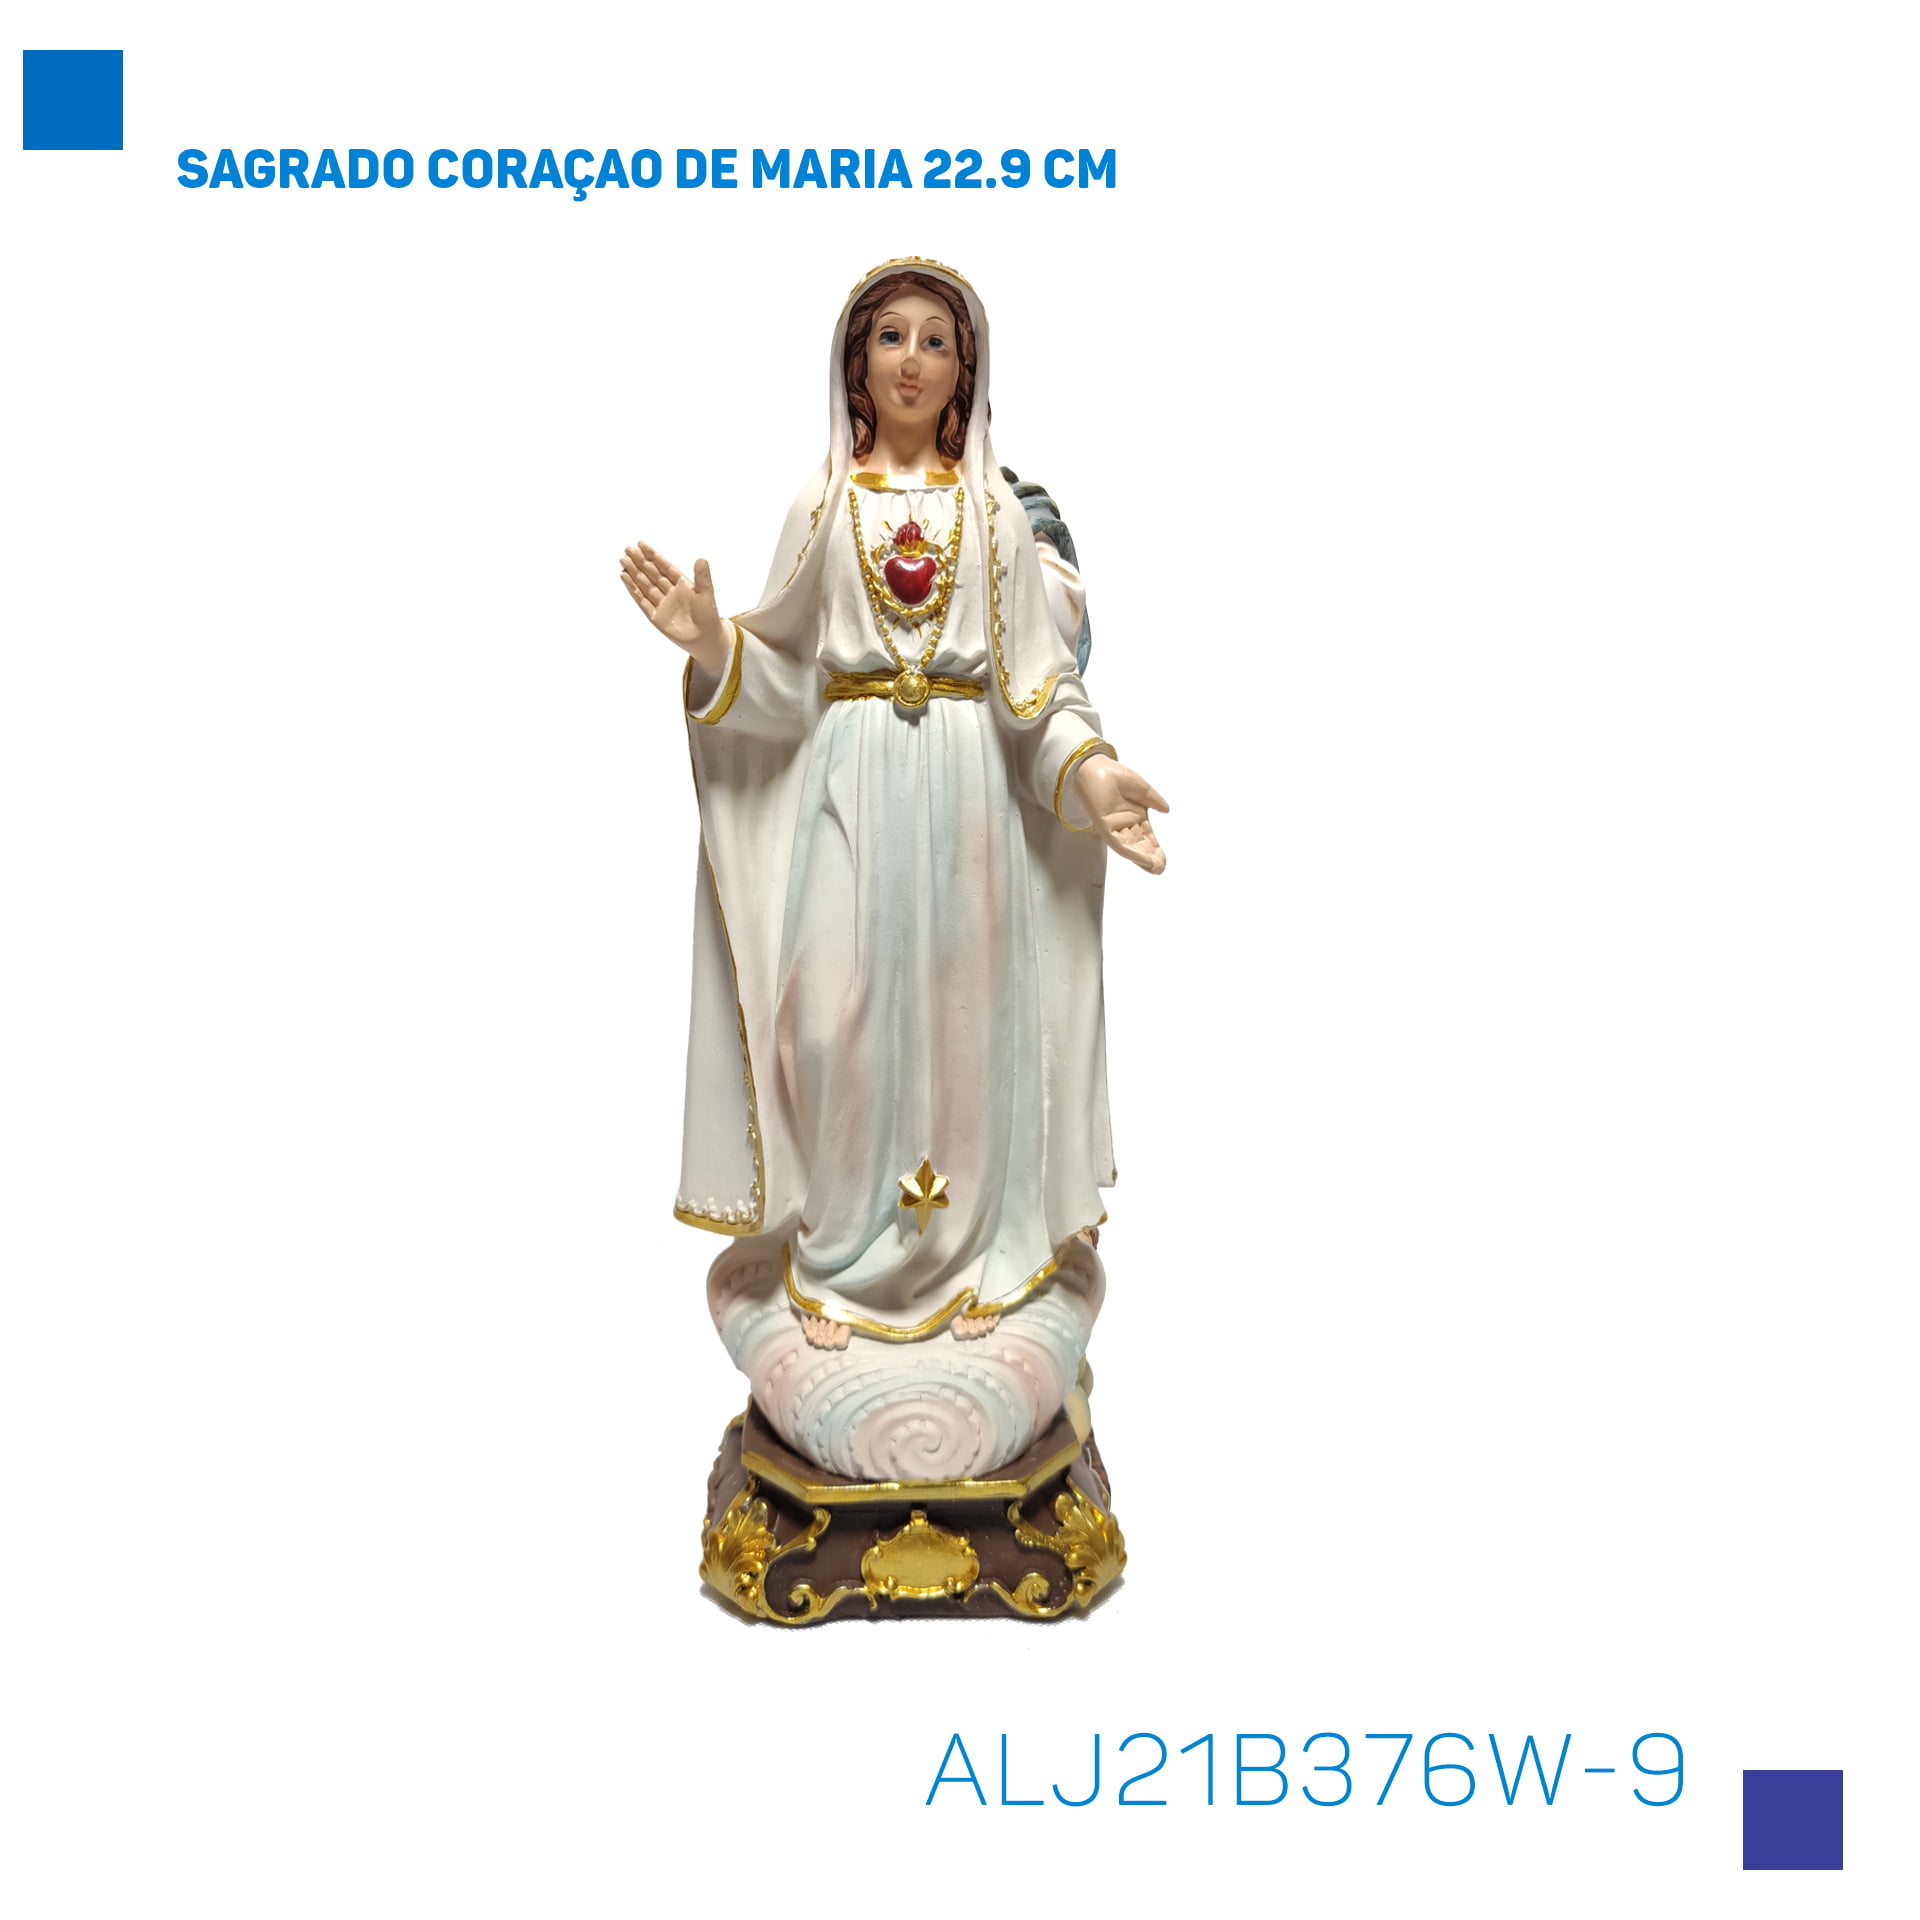 Bira Artigos Religiosos - SAGRADO CORAÇAO DE MARIA 22.9 CM - Cód . ALJ21B376W-9